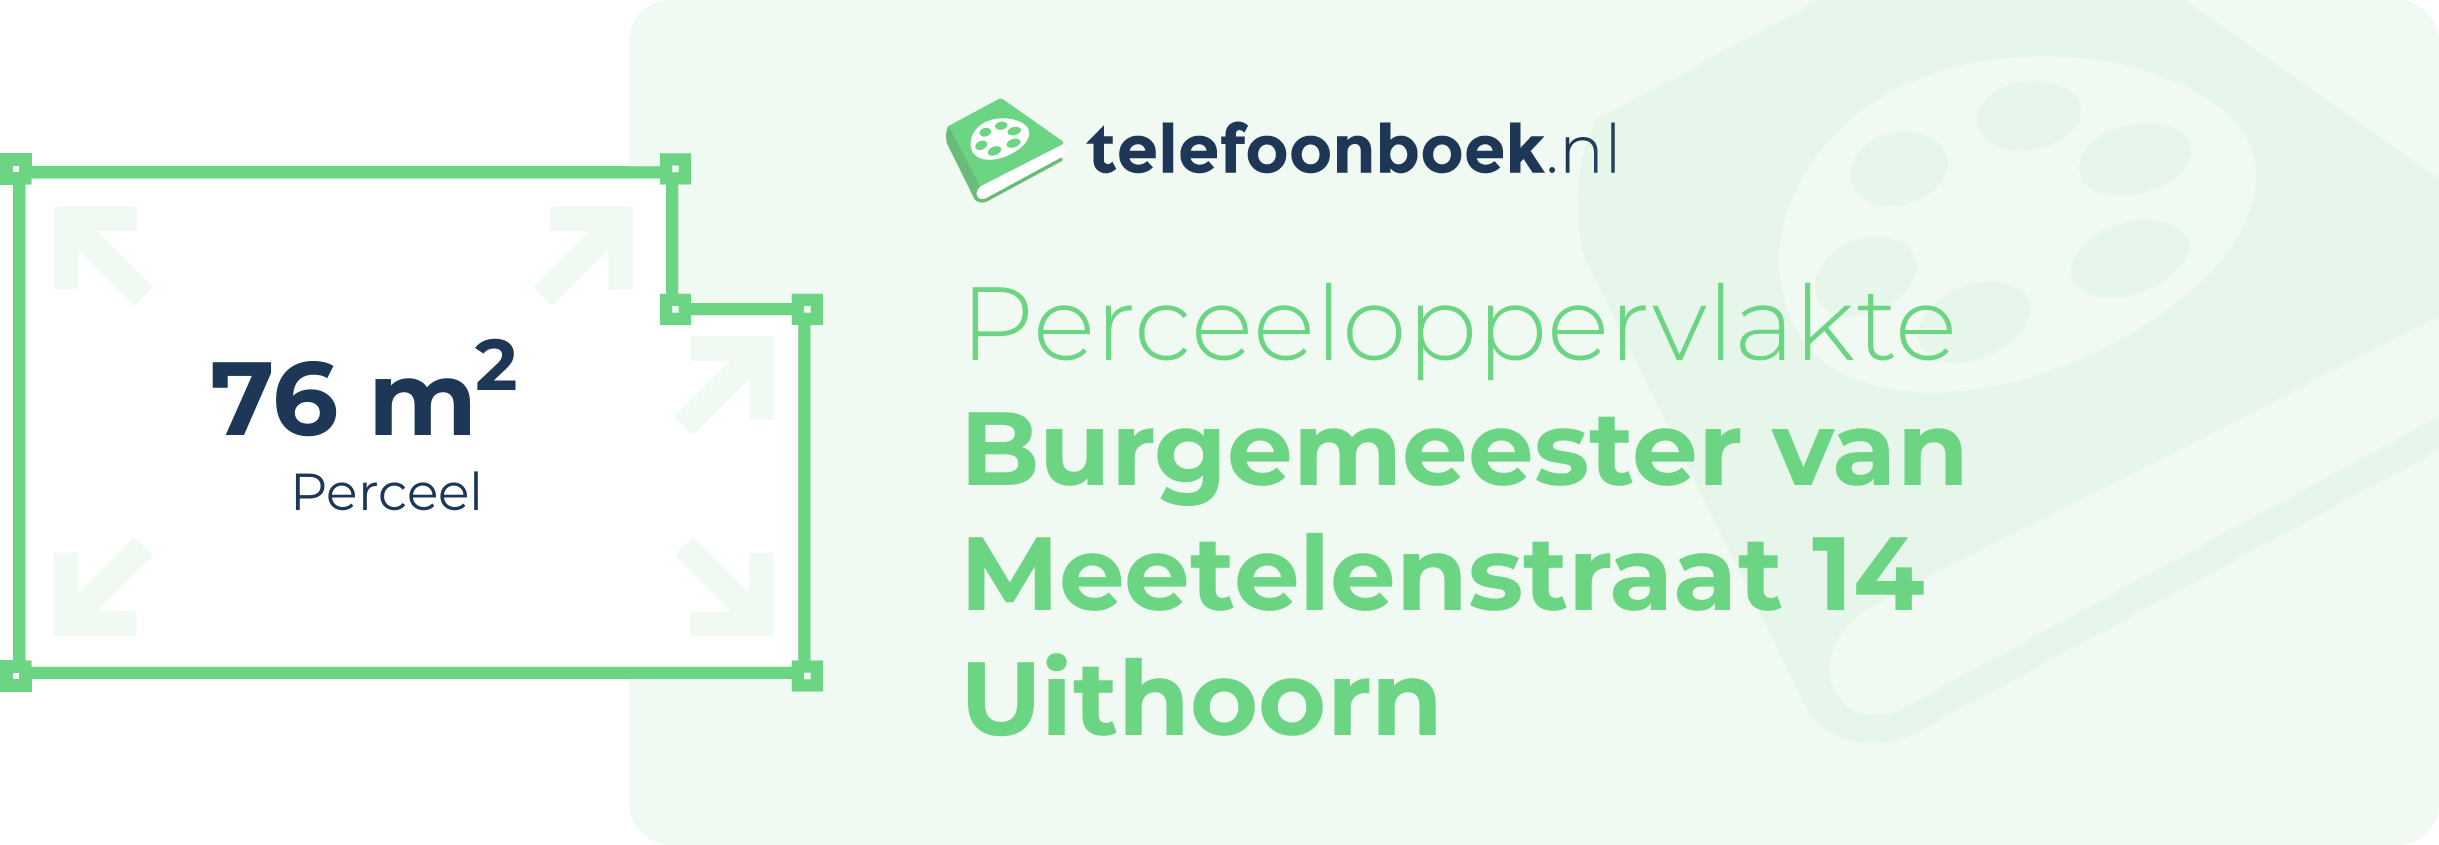 Perceeloppervlakte Burgemeester Van Meetelenstraat 14 Uithoorn